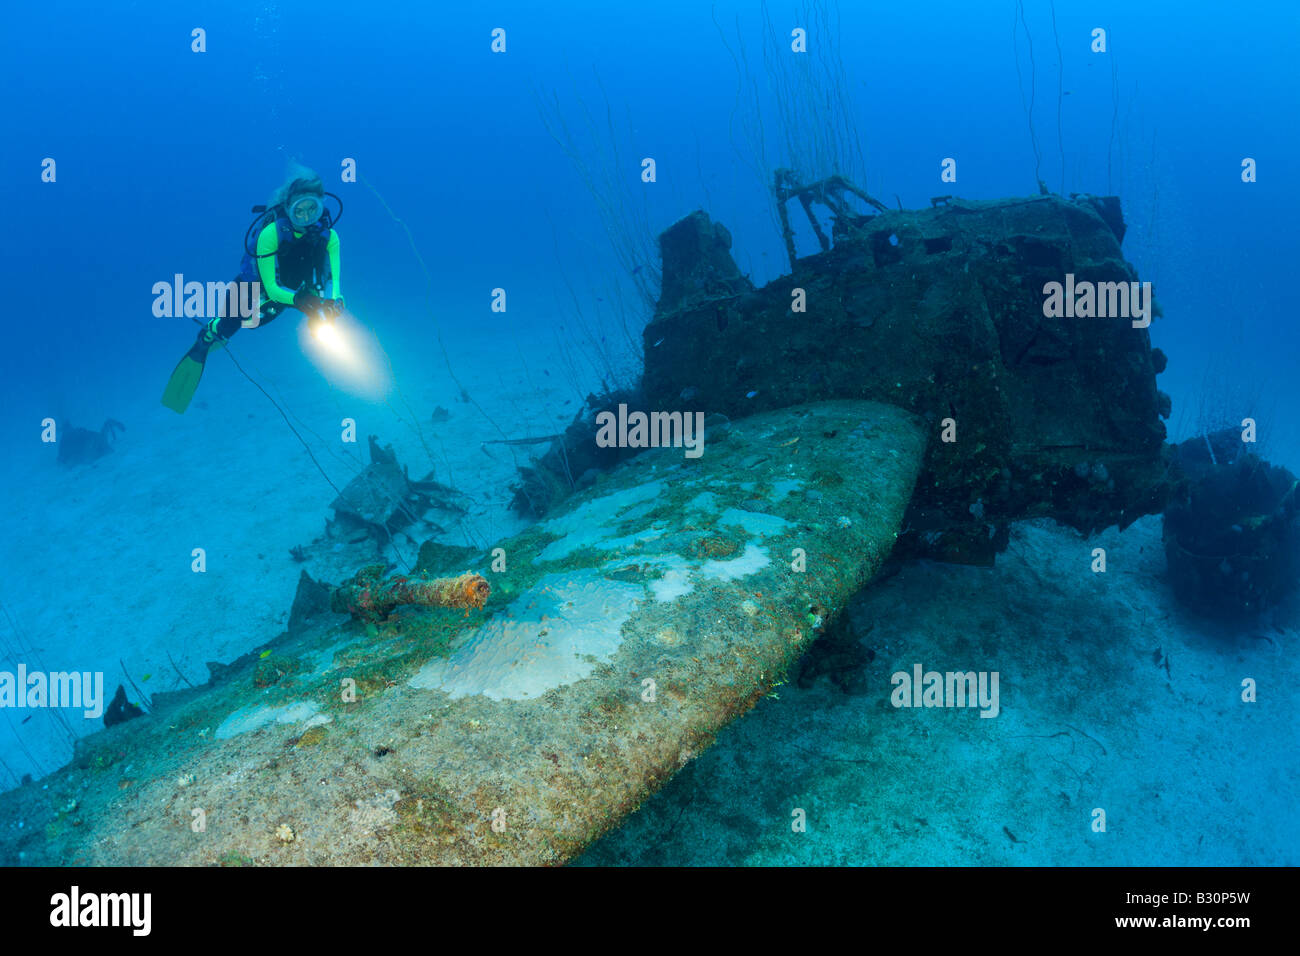 Plongeur et à l'armement anti aricraft Bomber près de USS Saratoga atoll de Bikini des Îles Marshall Micronésie Océan Pacifique Banque D'Images